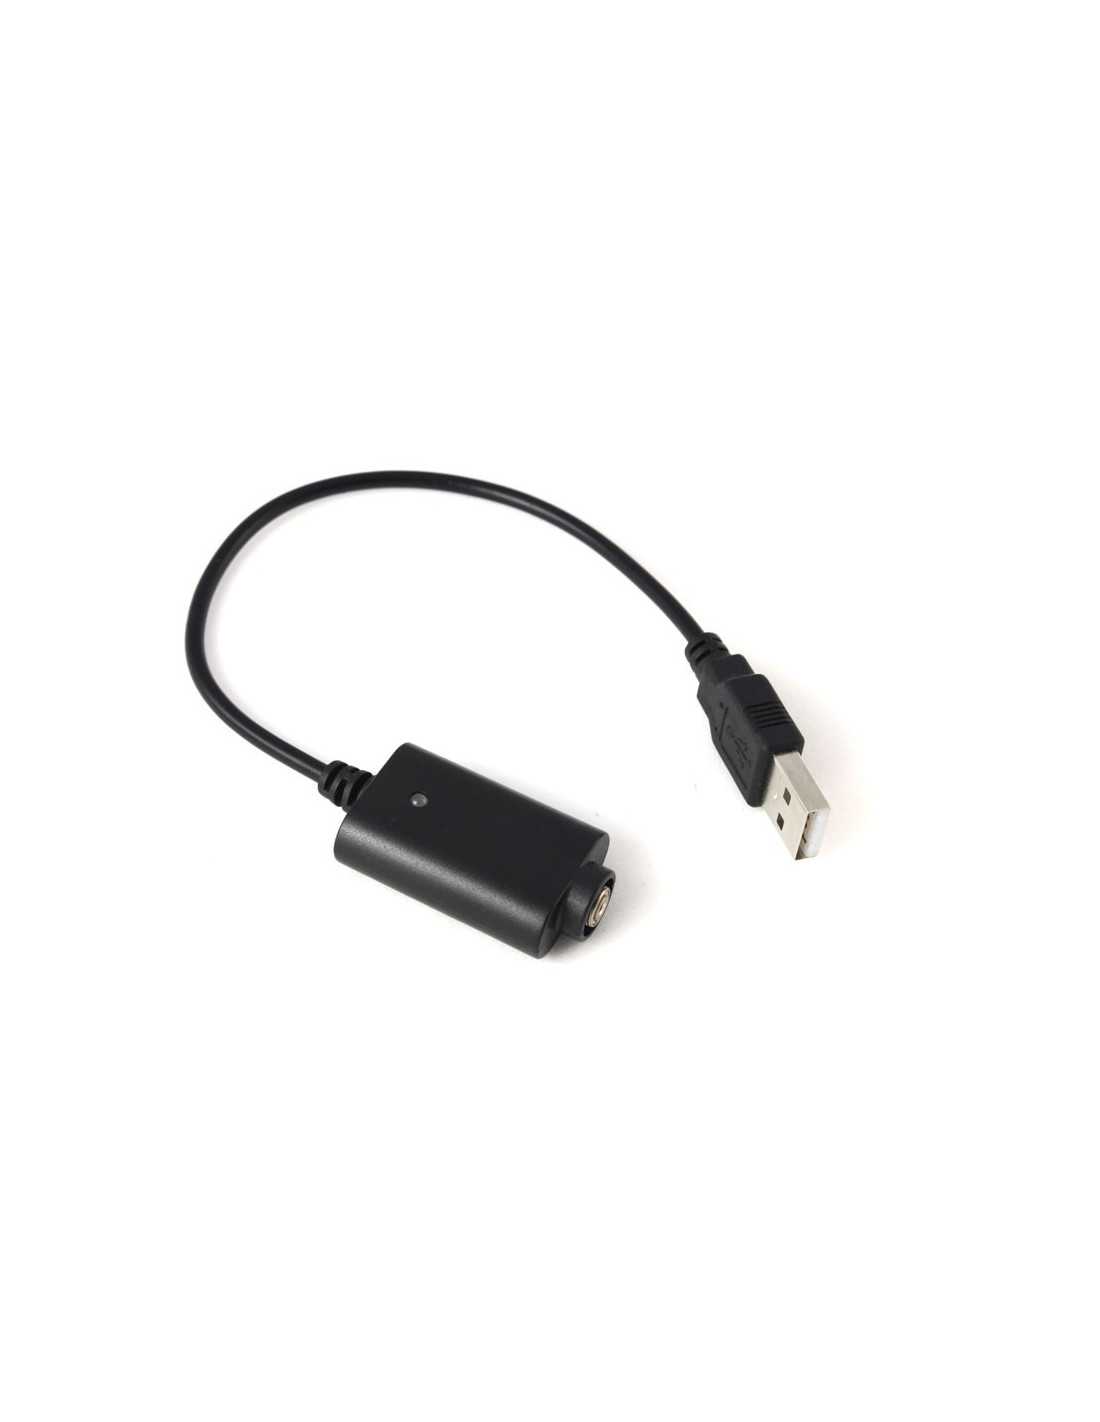 Chargeur USB EGO pour cigarette electronique